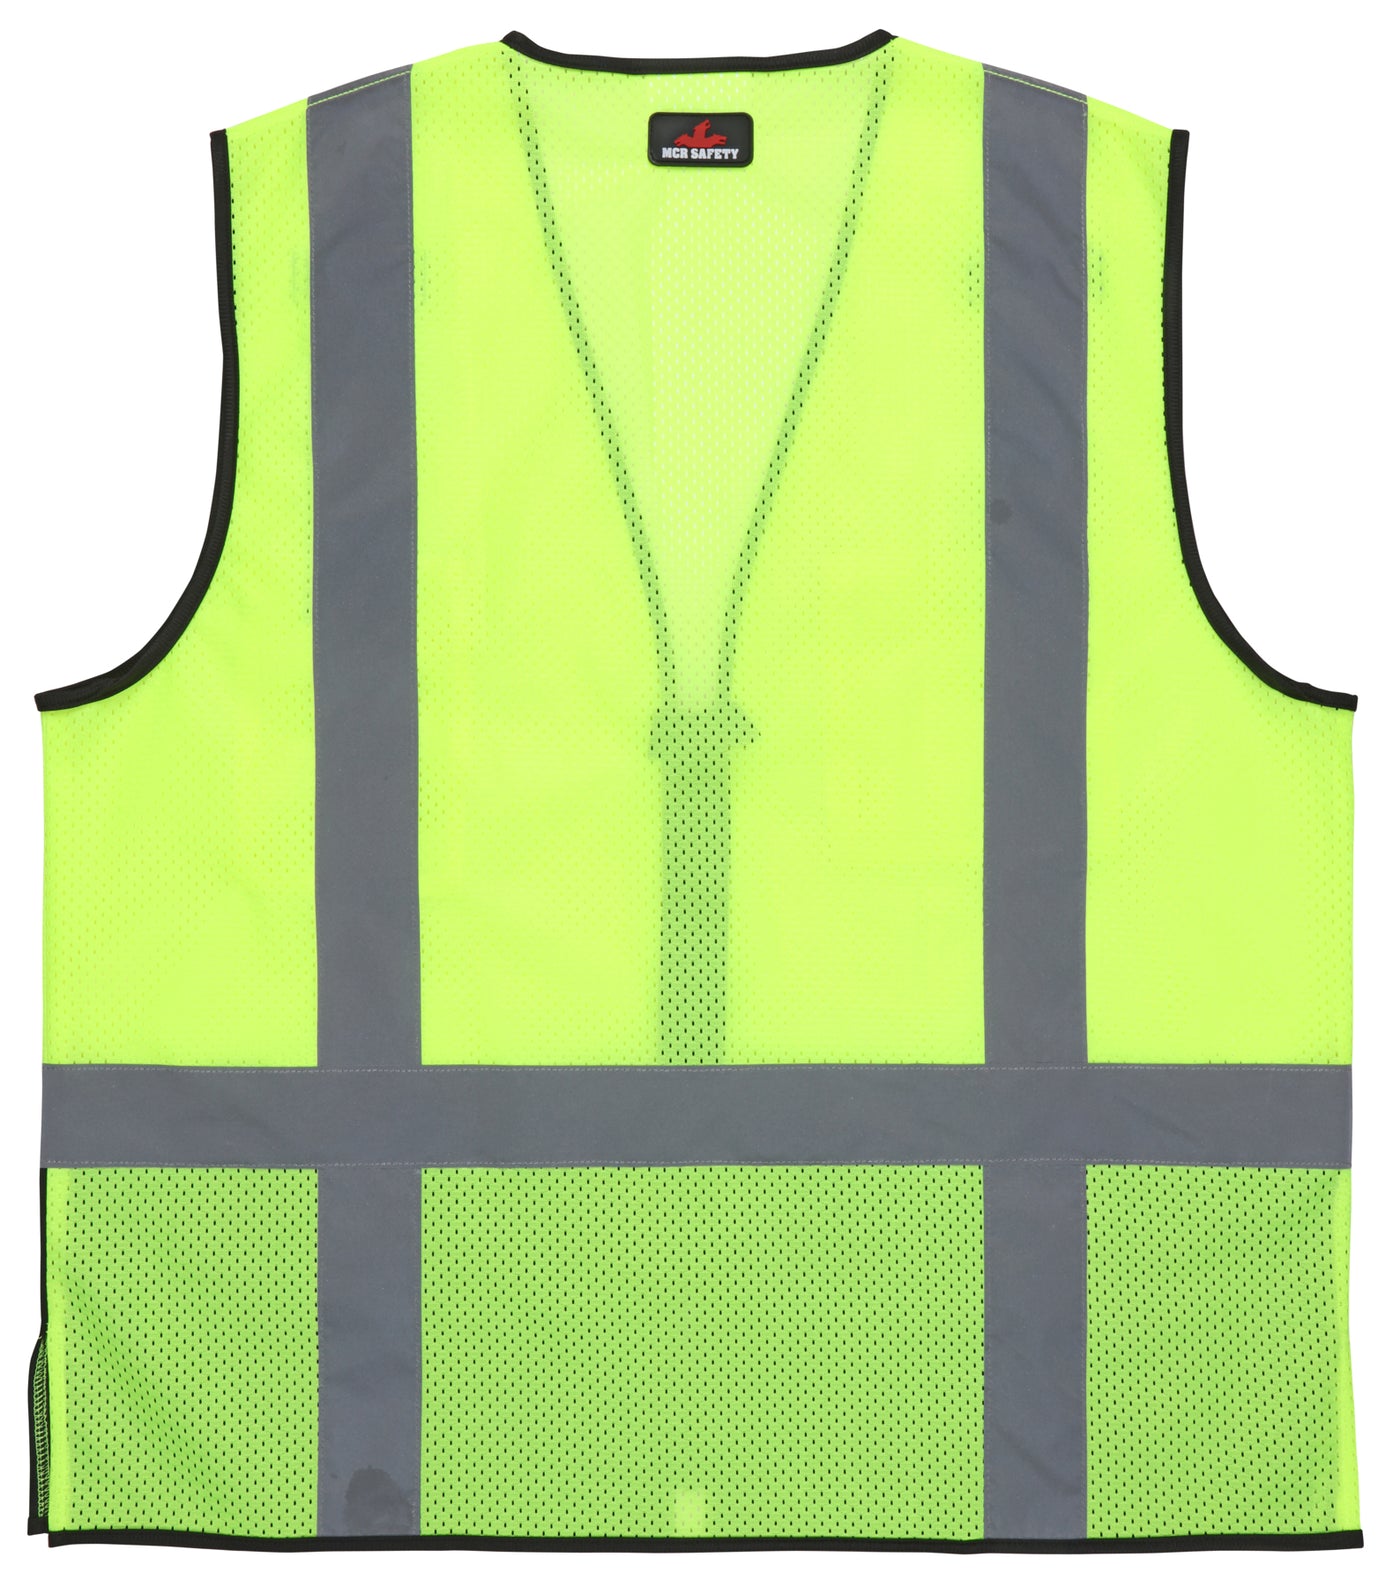 CL2MLSZ - Safety Vest, ANSI Class II